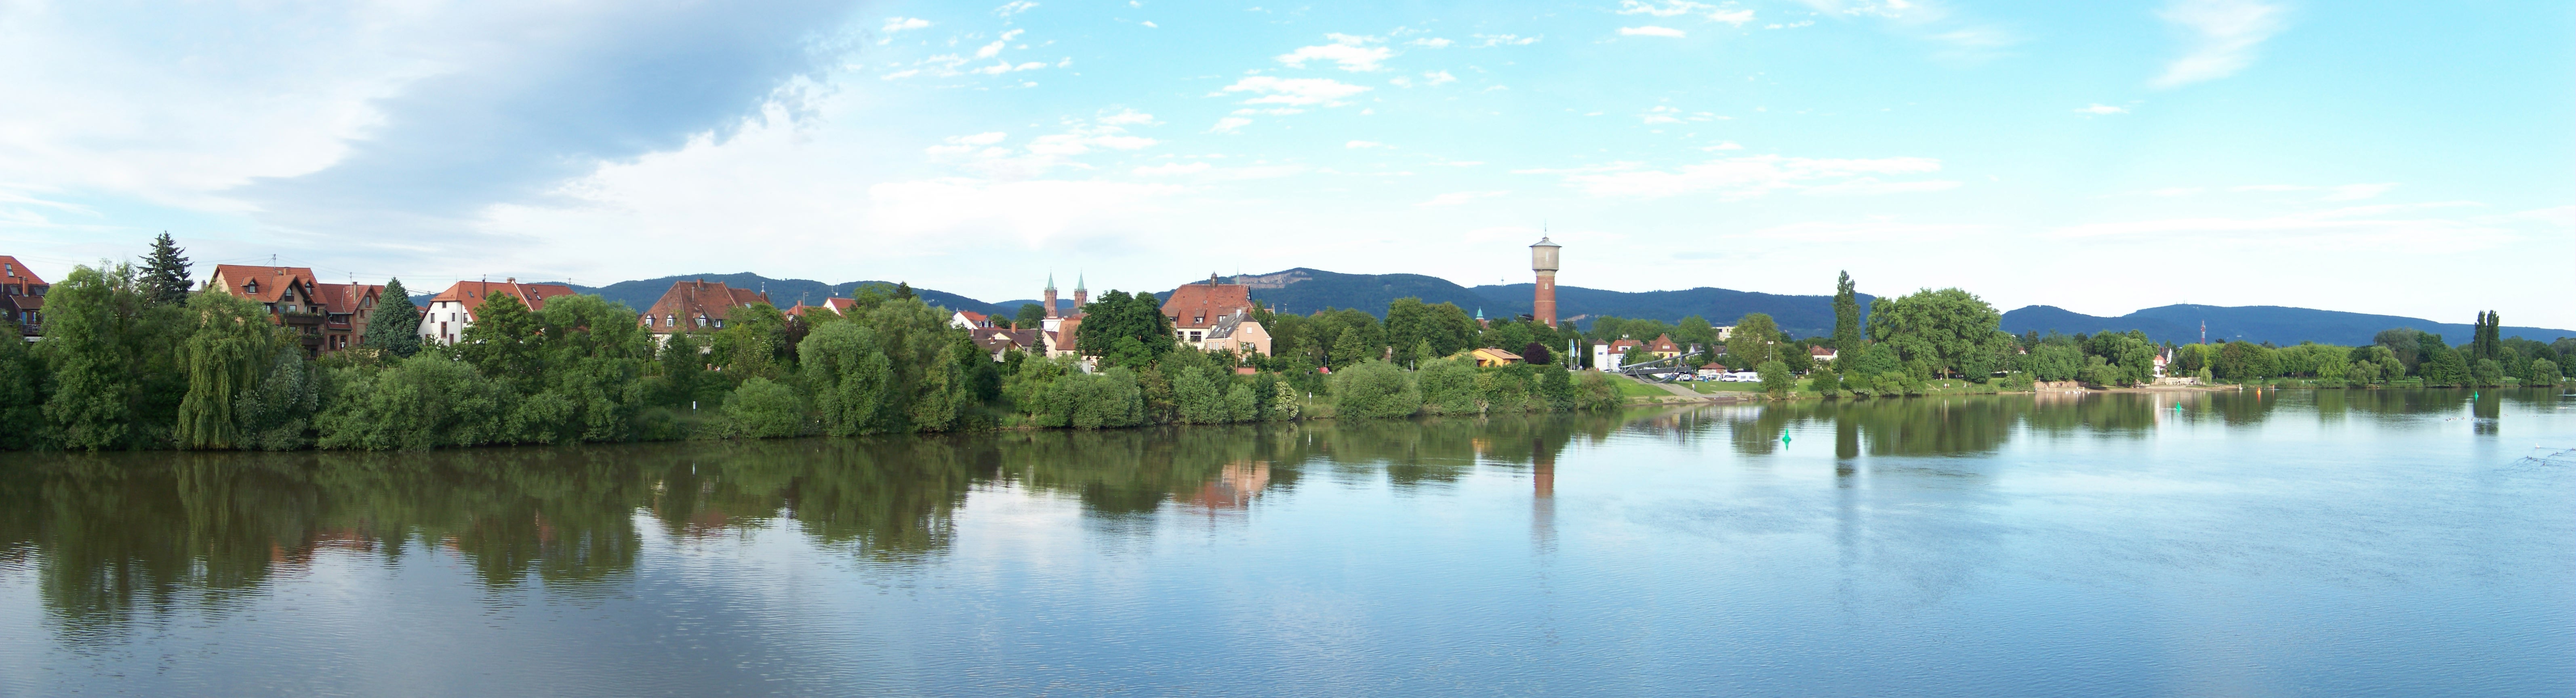 Datei:Ladenburg Neckarufer-Panorama.jpg